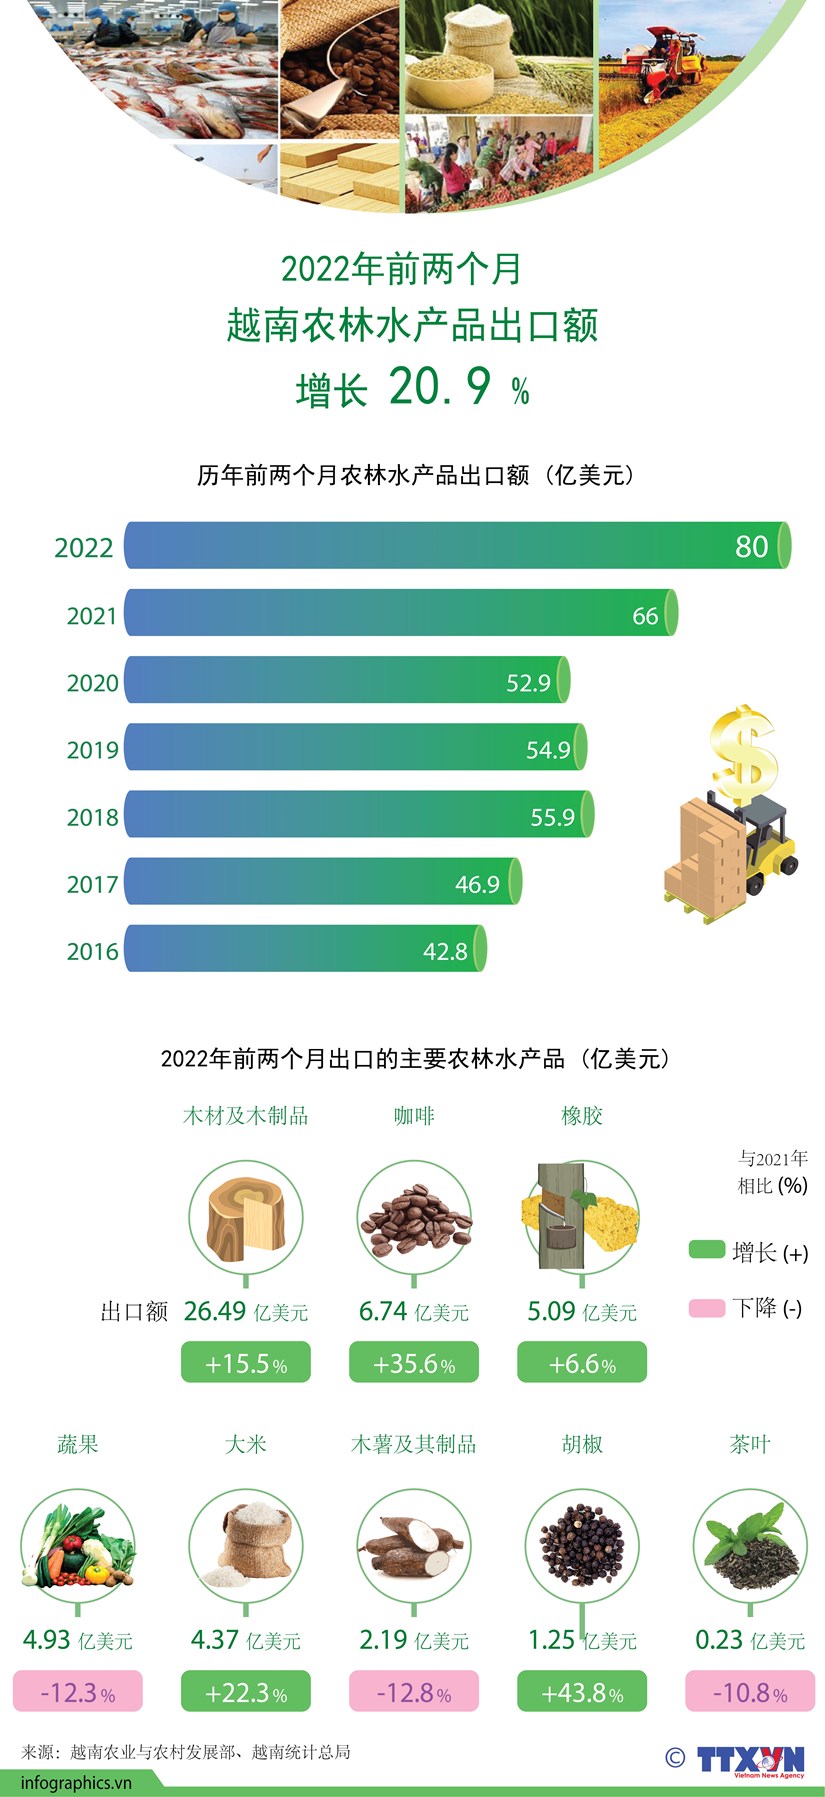 图表新闻：2022年前两个月越南农林水产品出口额 增长 20.9 % hinh anh 1